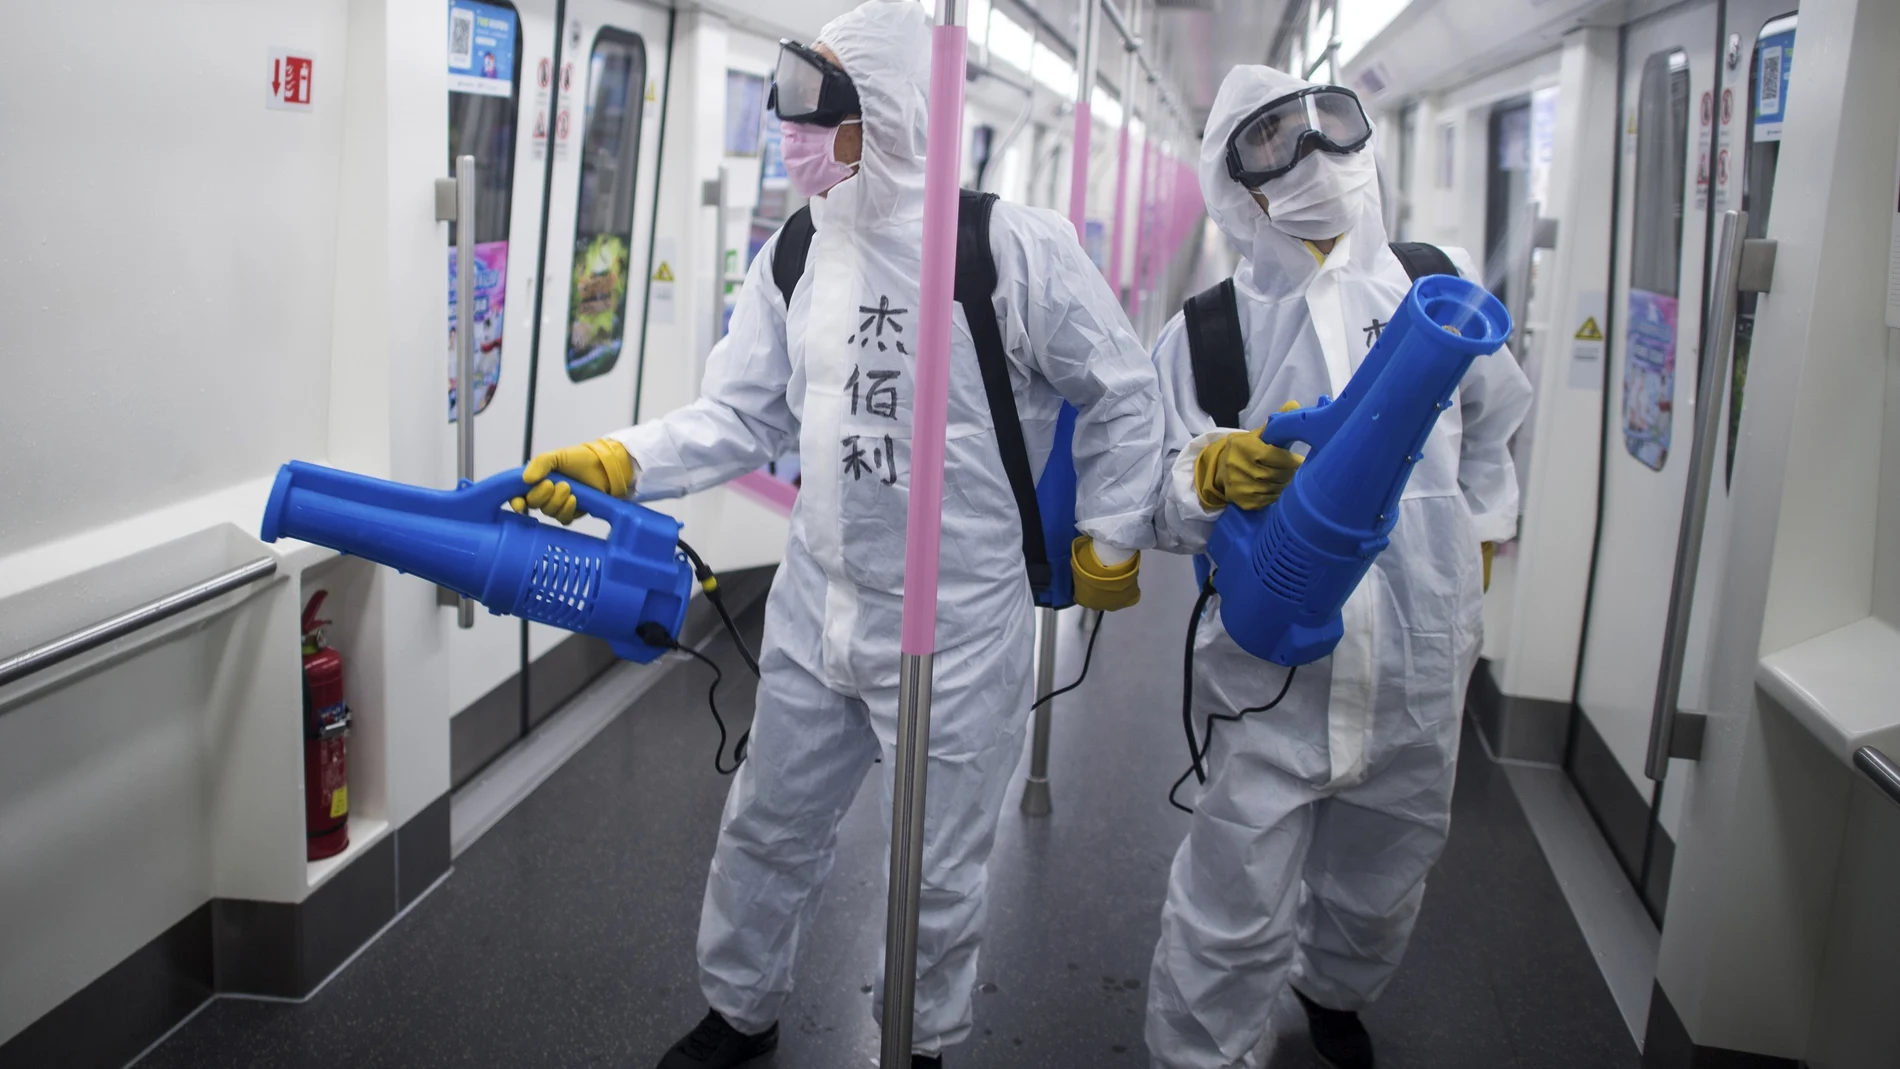 Operarios desinfectan un vagón de metro de Wuhan antes de su su reapertura/AP